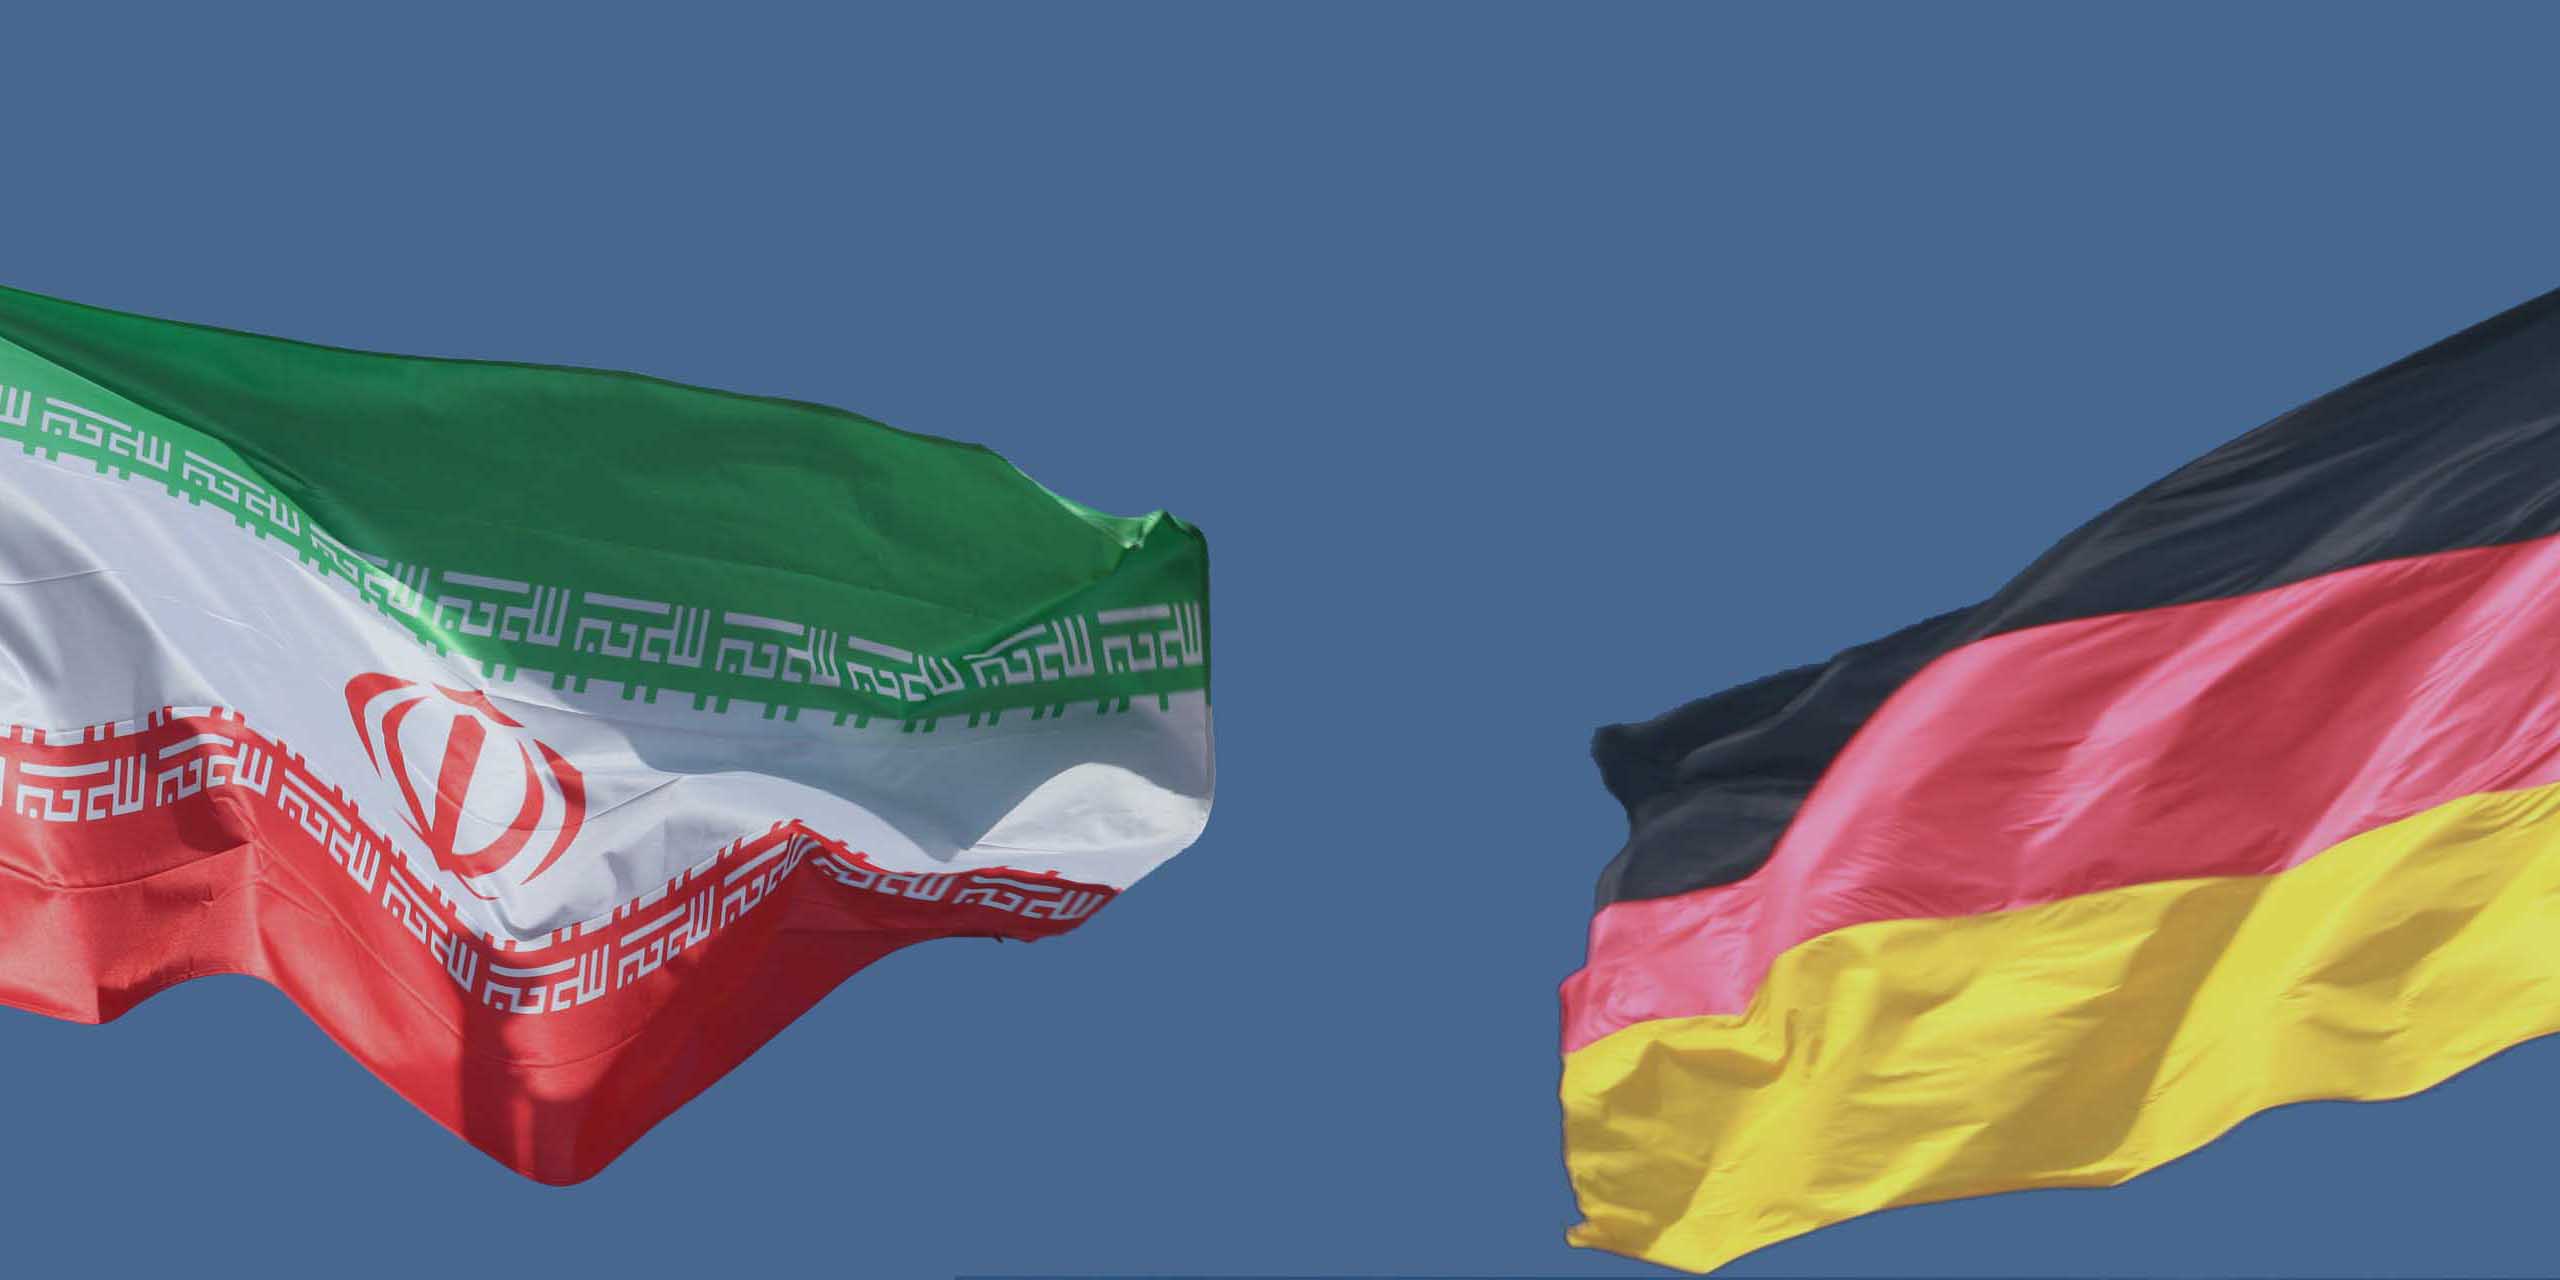 فرانکوفورته آلگماینه: صادرات آلمان به ایران هفت درصد افزایش یافته است